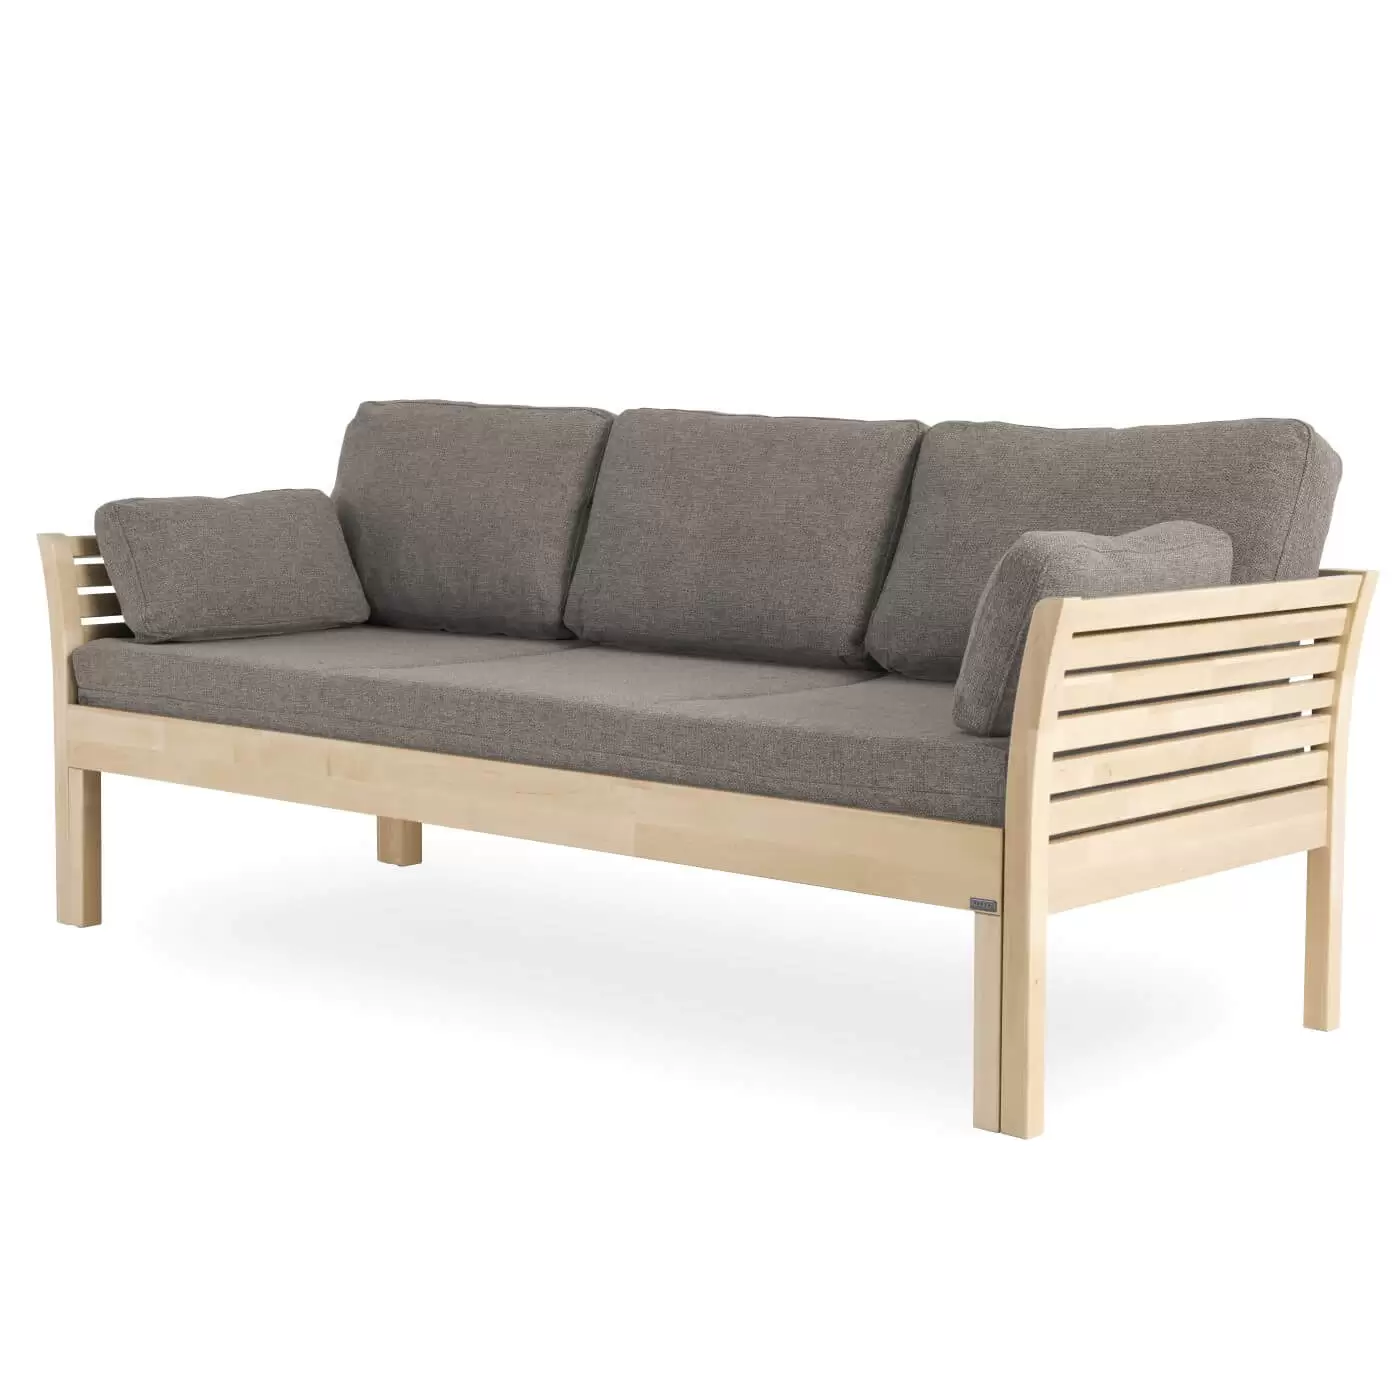 Sofa skandynawska KANERVA na wysokich nóżkach, z litego drewna brzozy, z beżowym materacem i 5 poduszkami. Nowoczesny design